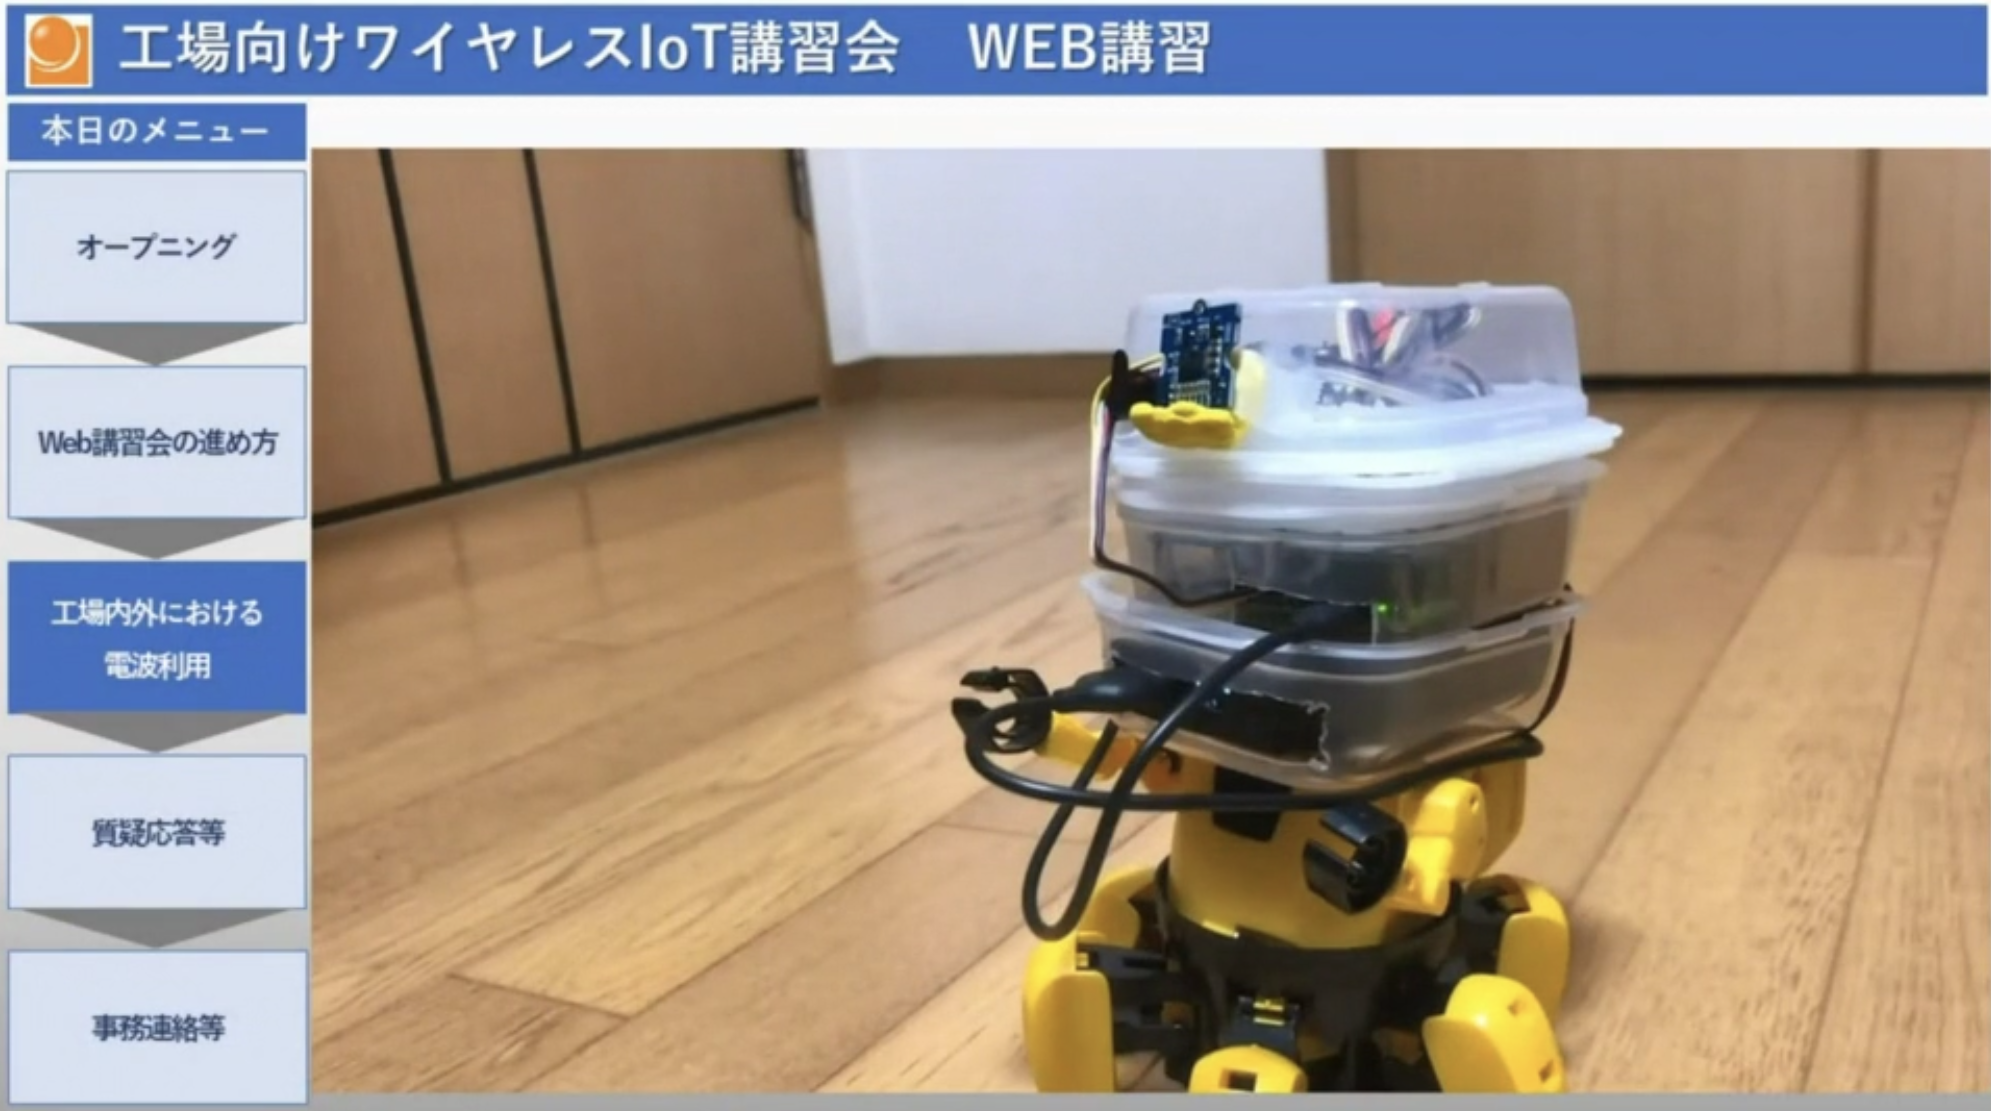 IoT機器ロボットの紹介画像